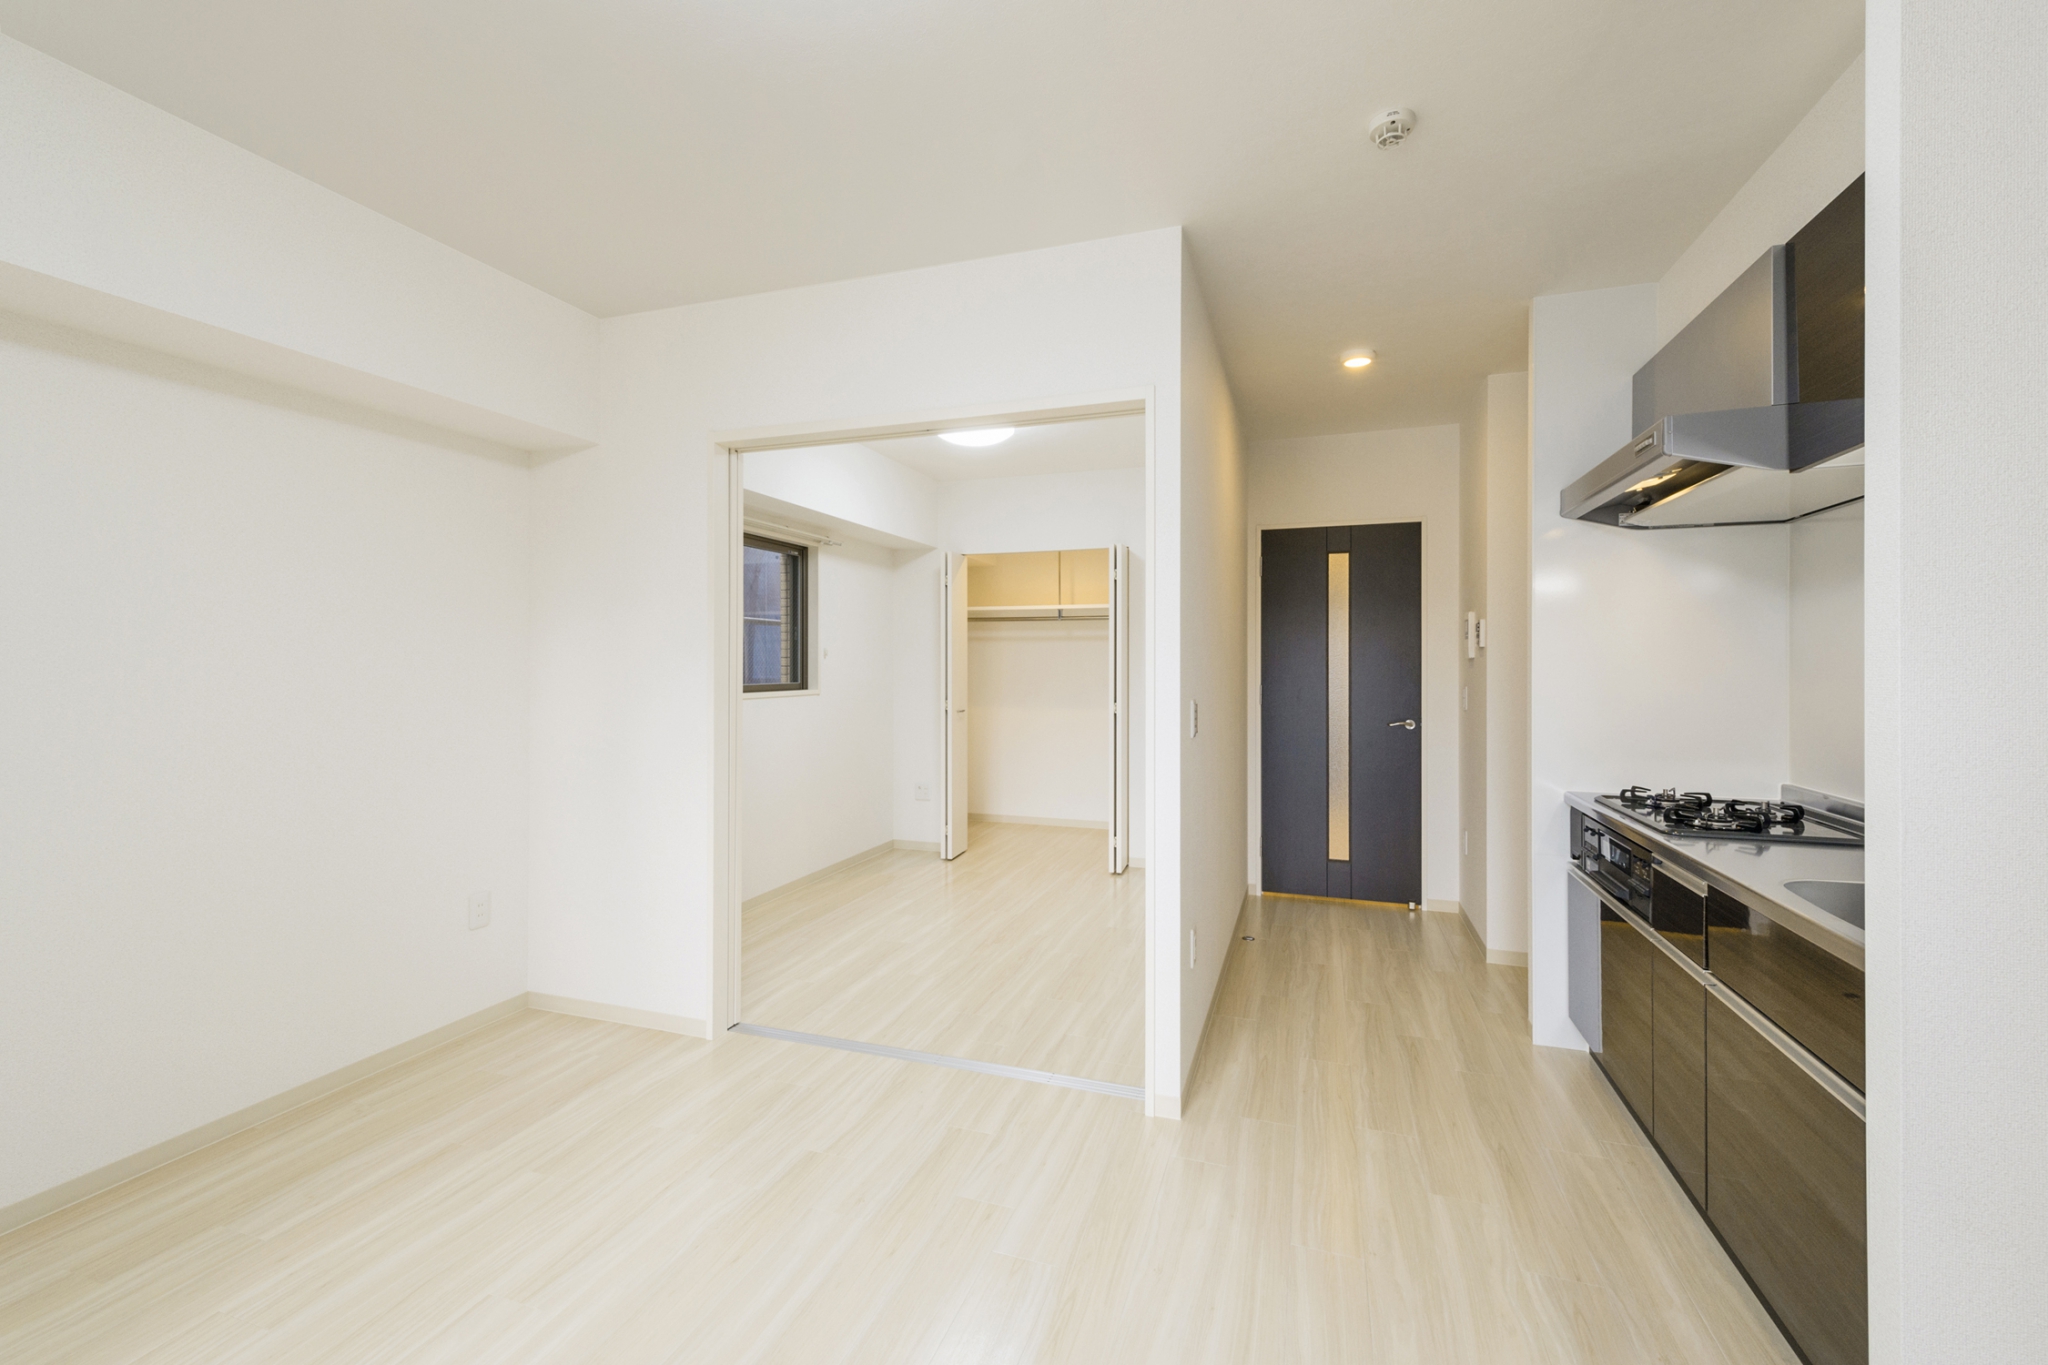 岐阜県岐阜市の賃貸マンションのナチュラルテイストな洋室・LDKに映えるドアとキッチン